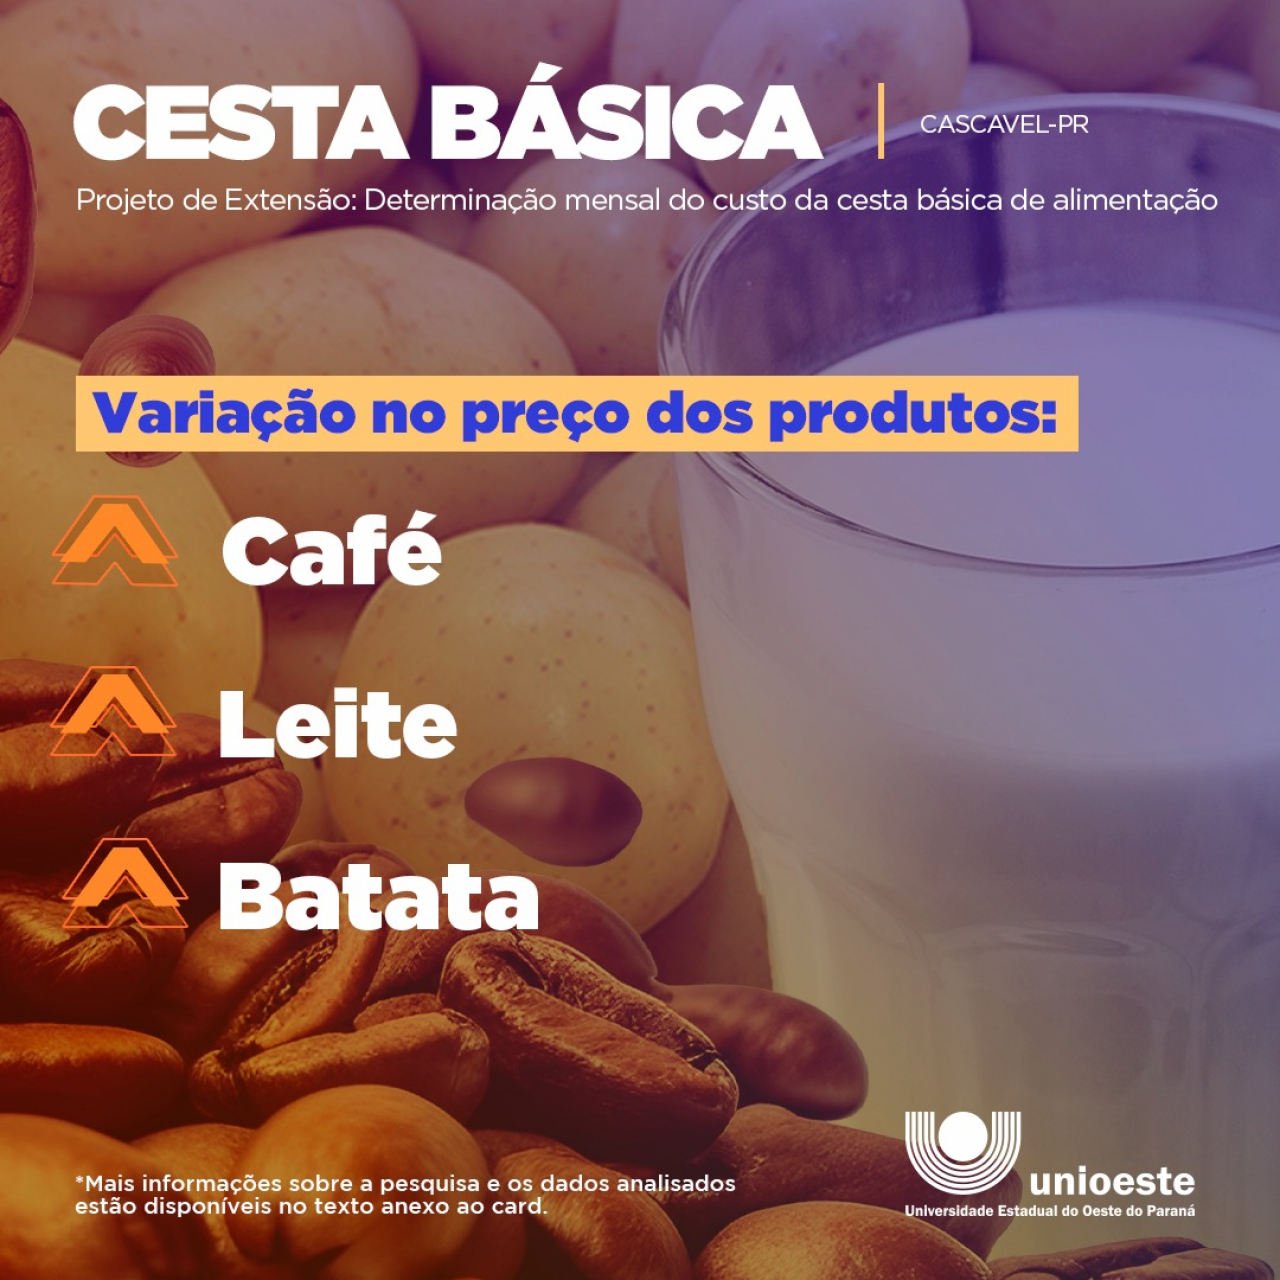 Cesta básica de alimentos em aumentou 0,04% em Cascavel